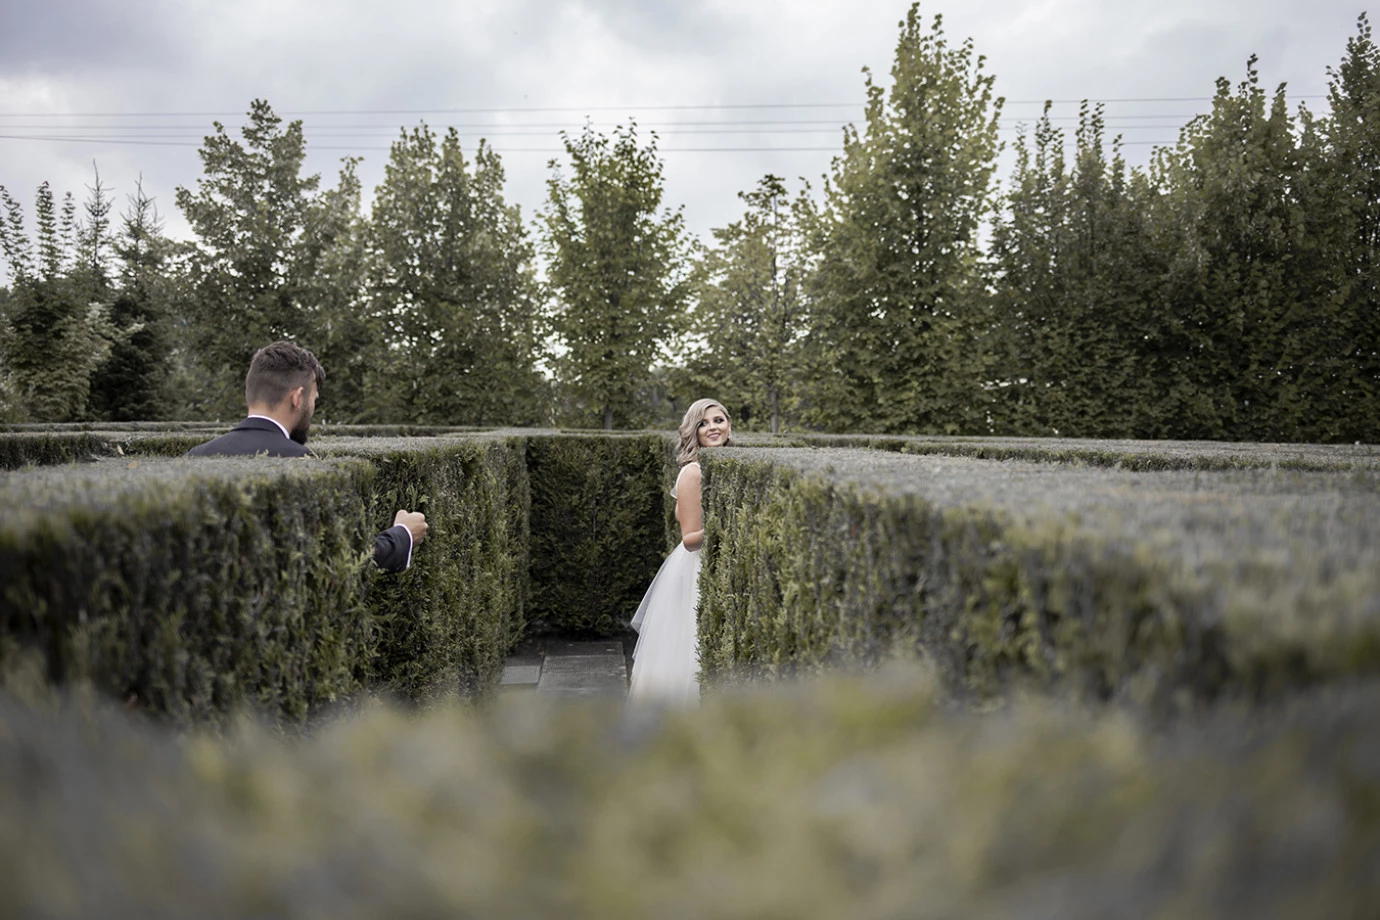 zdjęcia katowice fotograf zwelonemczybez portfolio zdjecia slubne inspiracje wesele plener slubny sesja slubna